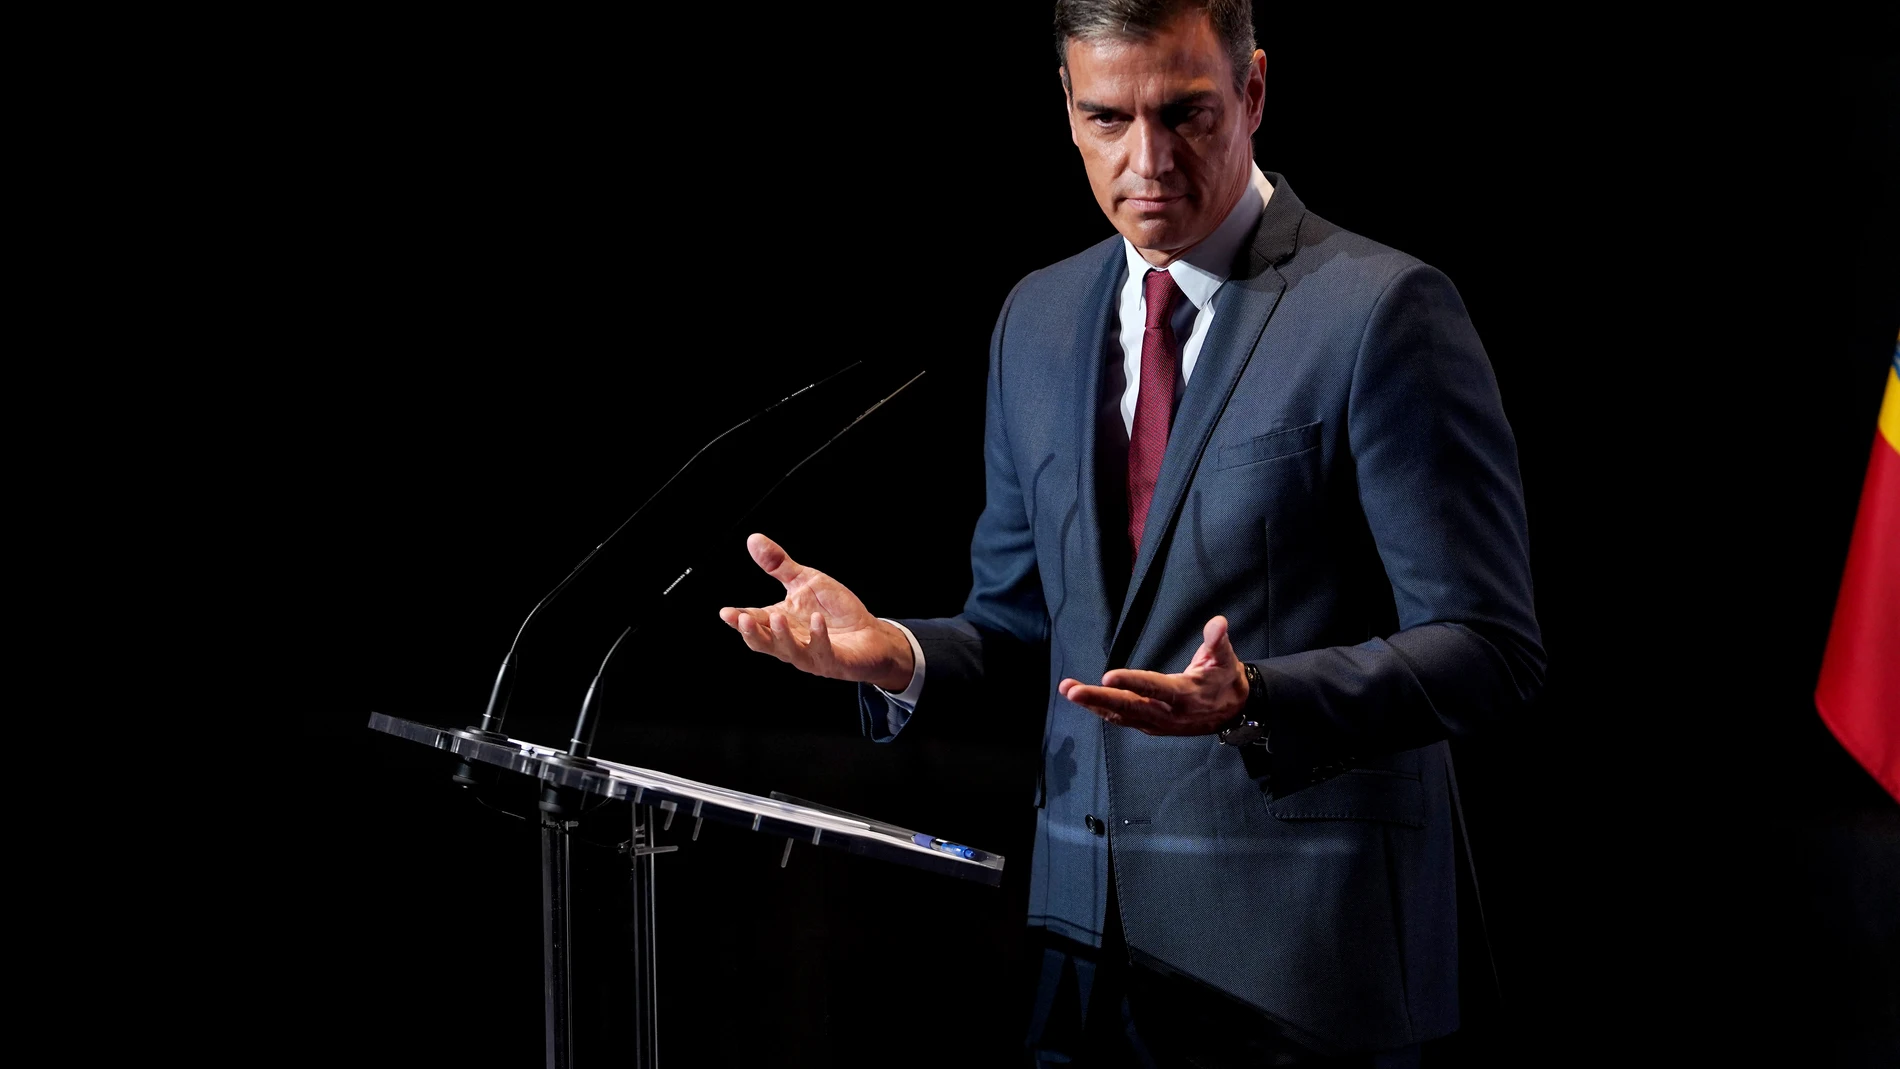 El presidente del Gobierno, Pedro Sánchez, durante su conferencia en Casa de América para dar inicio oficialmente al nuevo curso político, y presentar sus planes para los próximos meses.